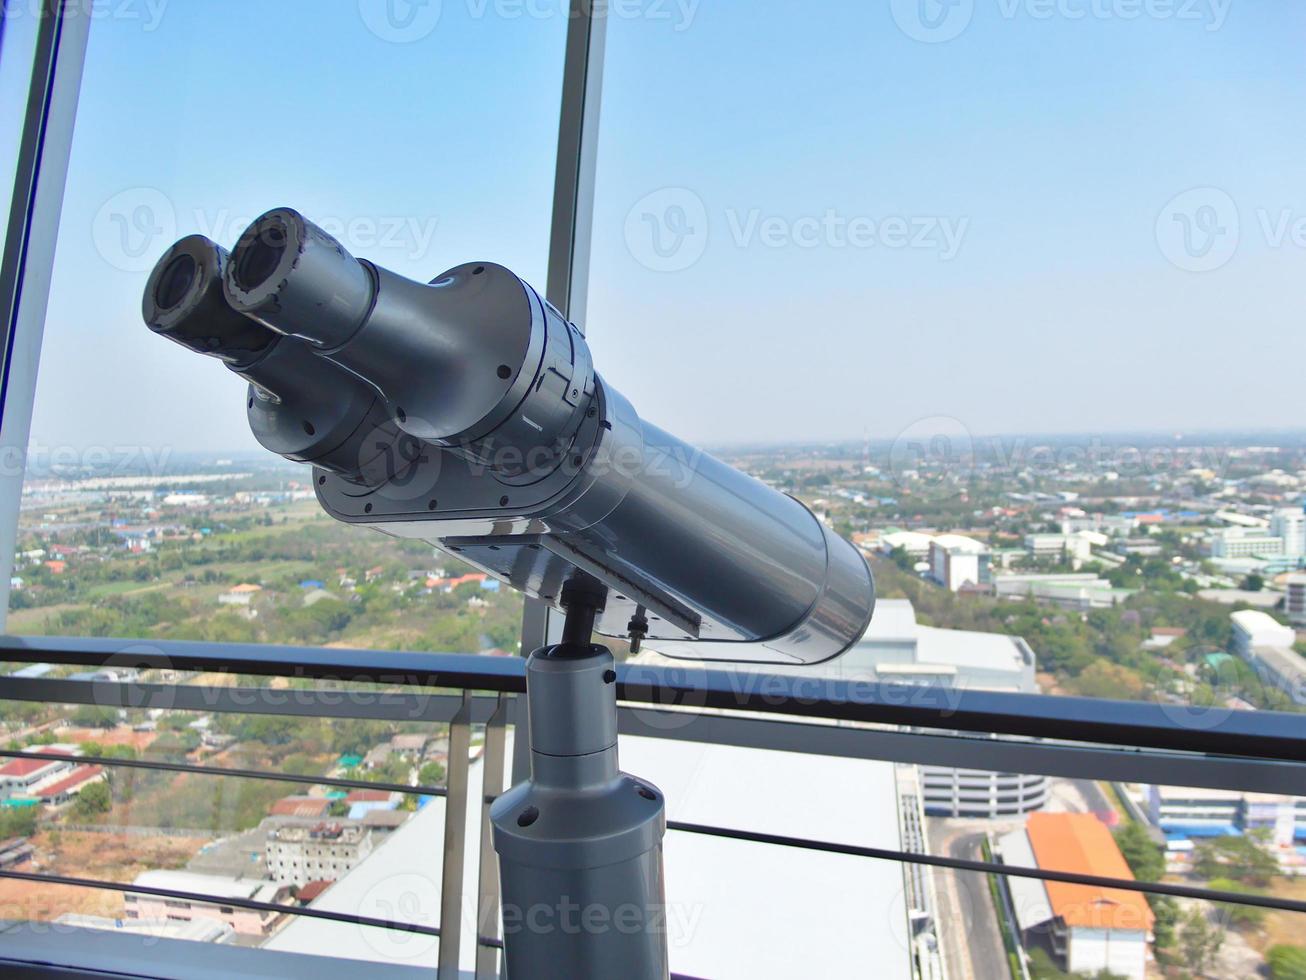 binóculos grandes podem ser usados para visualizar as vistas em edifícios altos. foto